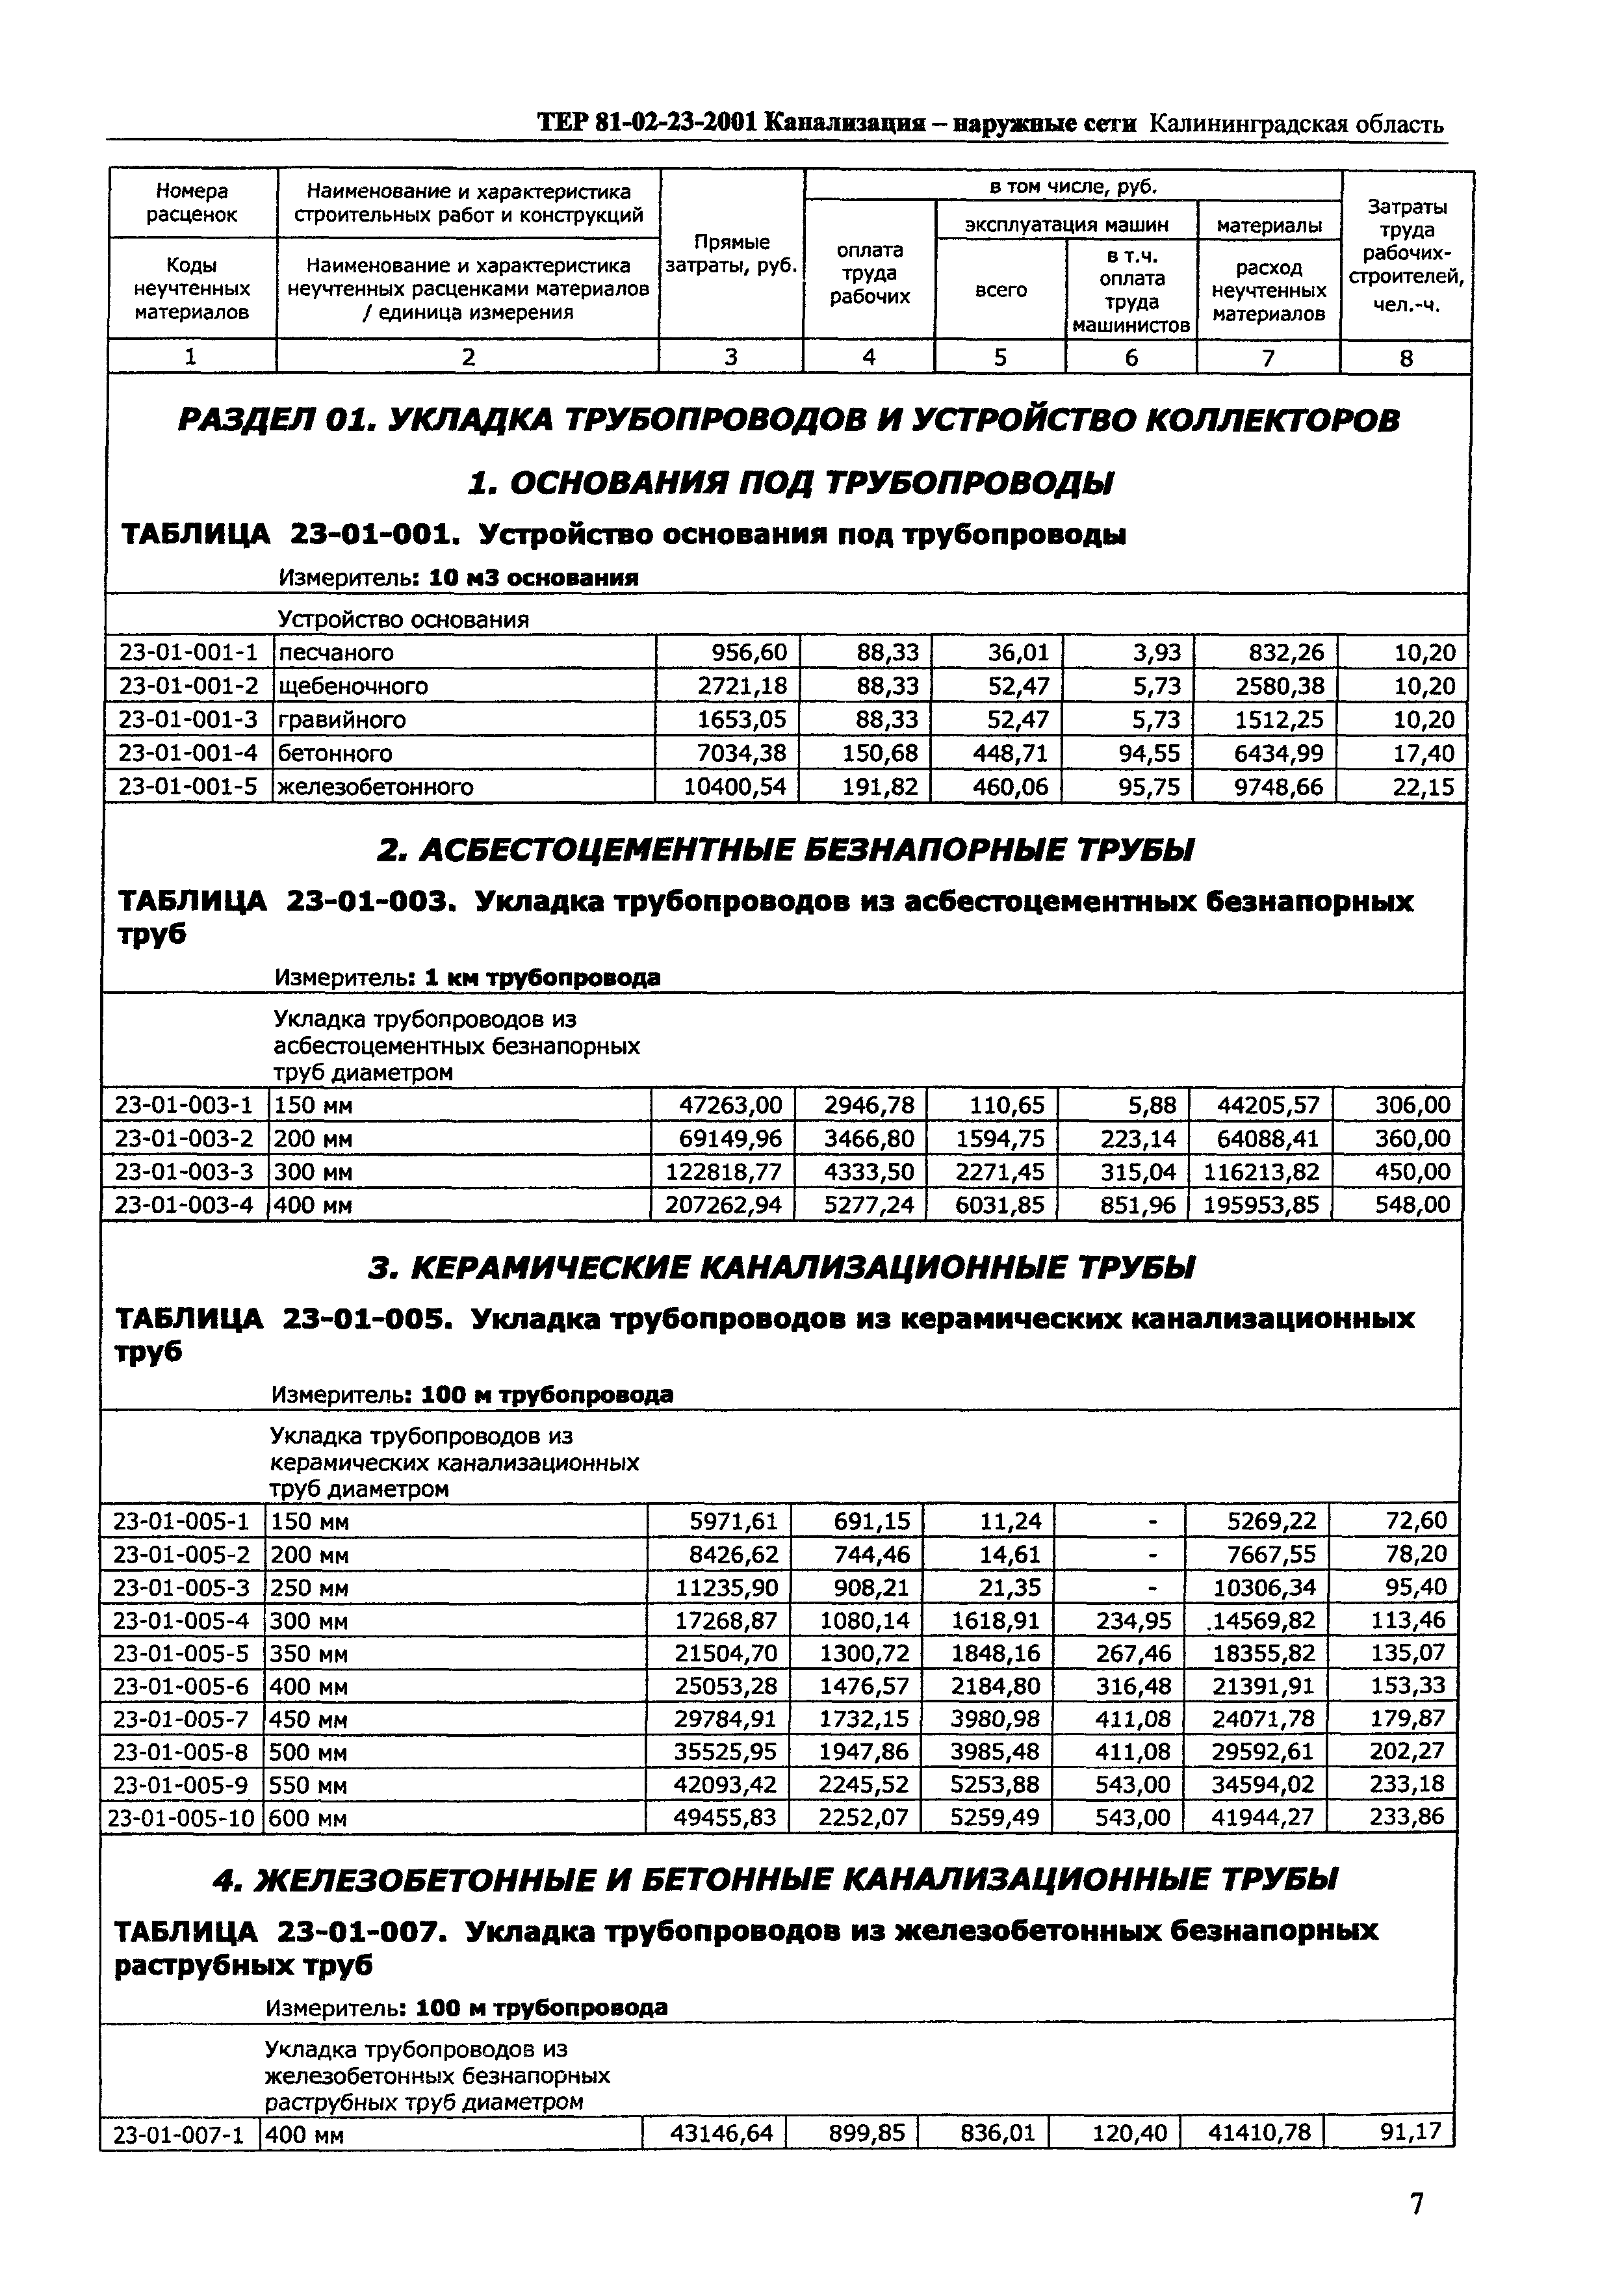 ТЕР Калининградской области 2001-23